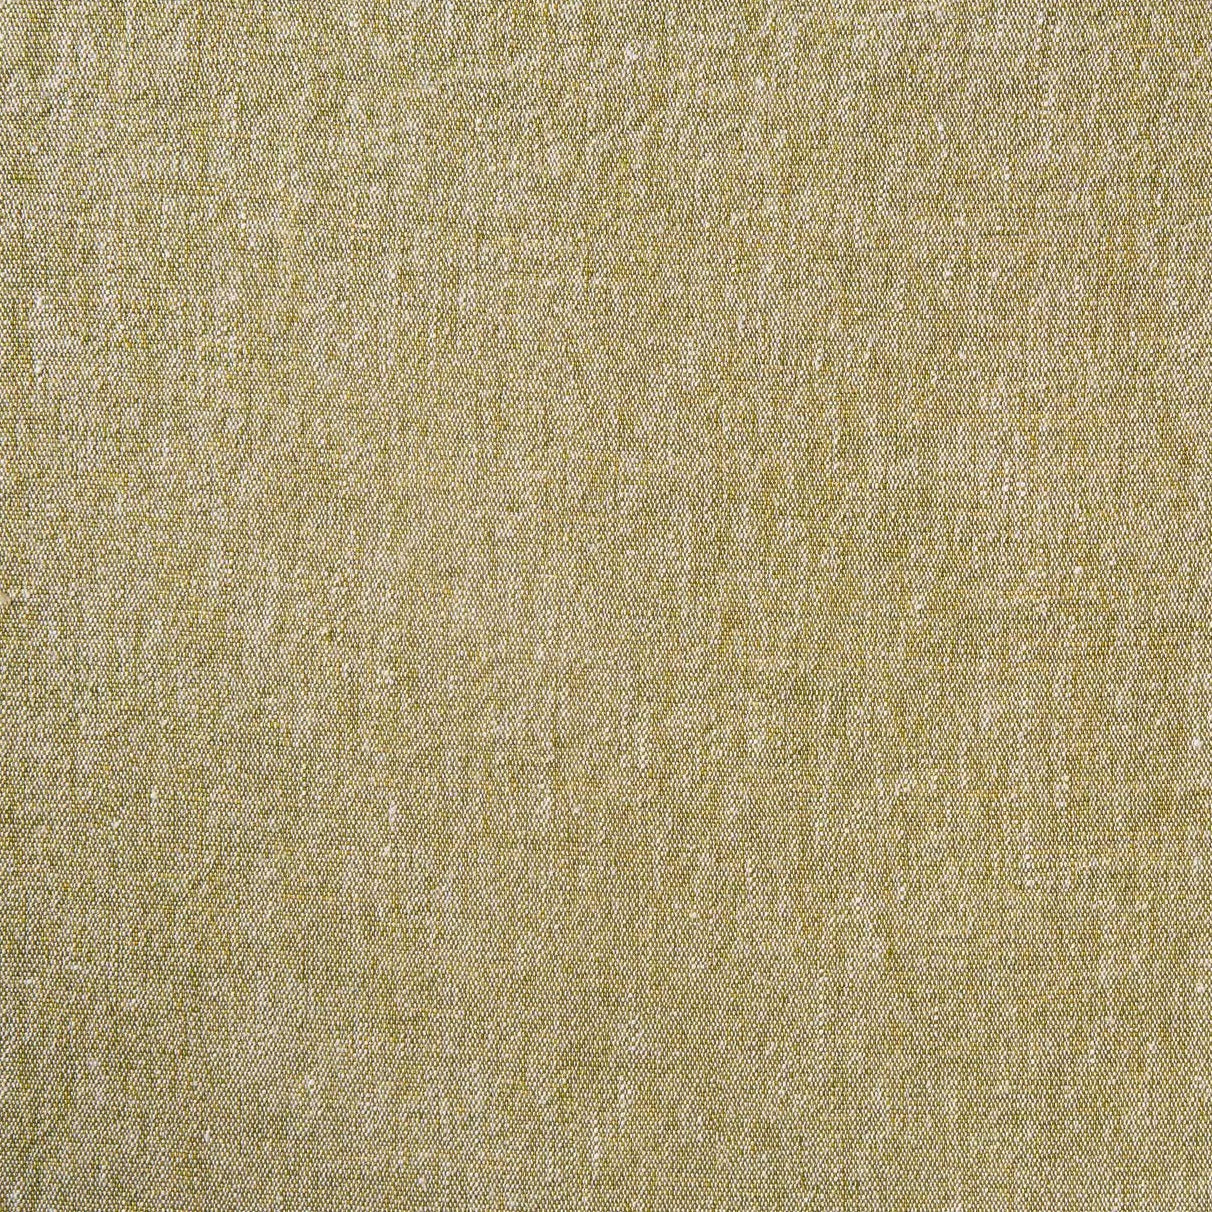 Plain Linen - Green